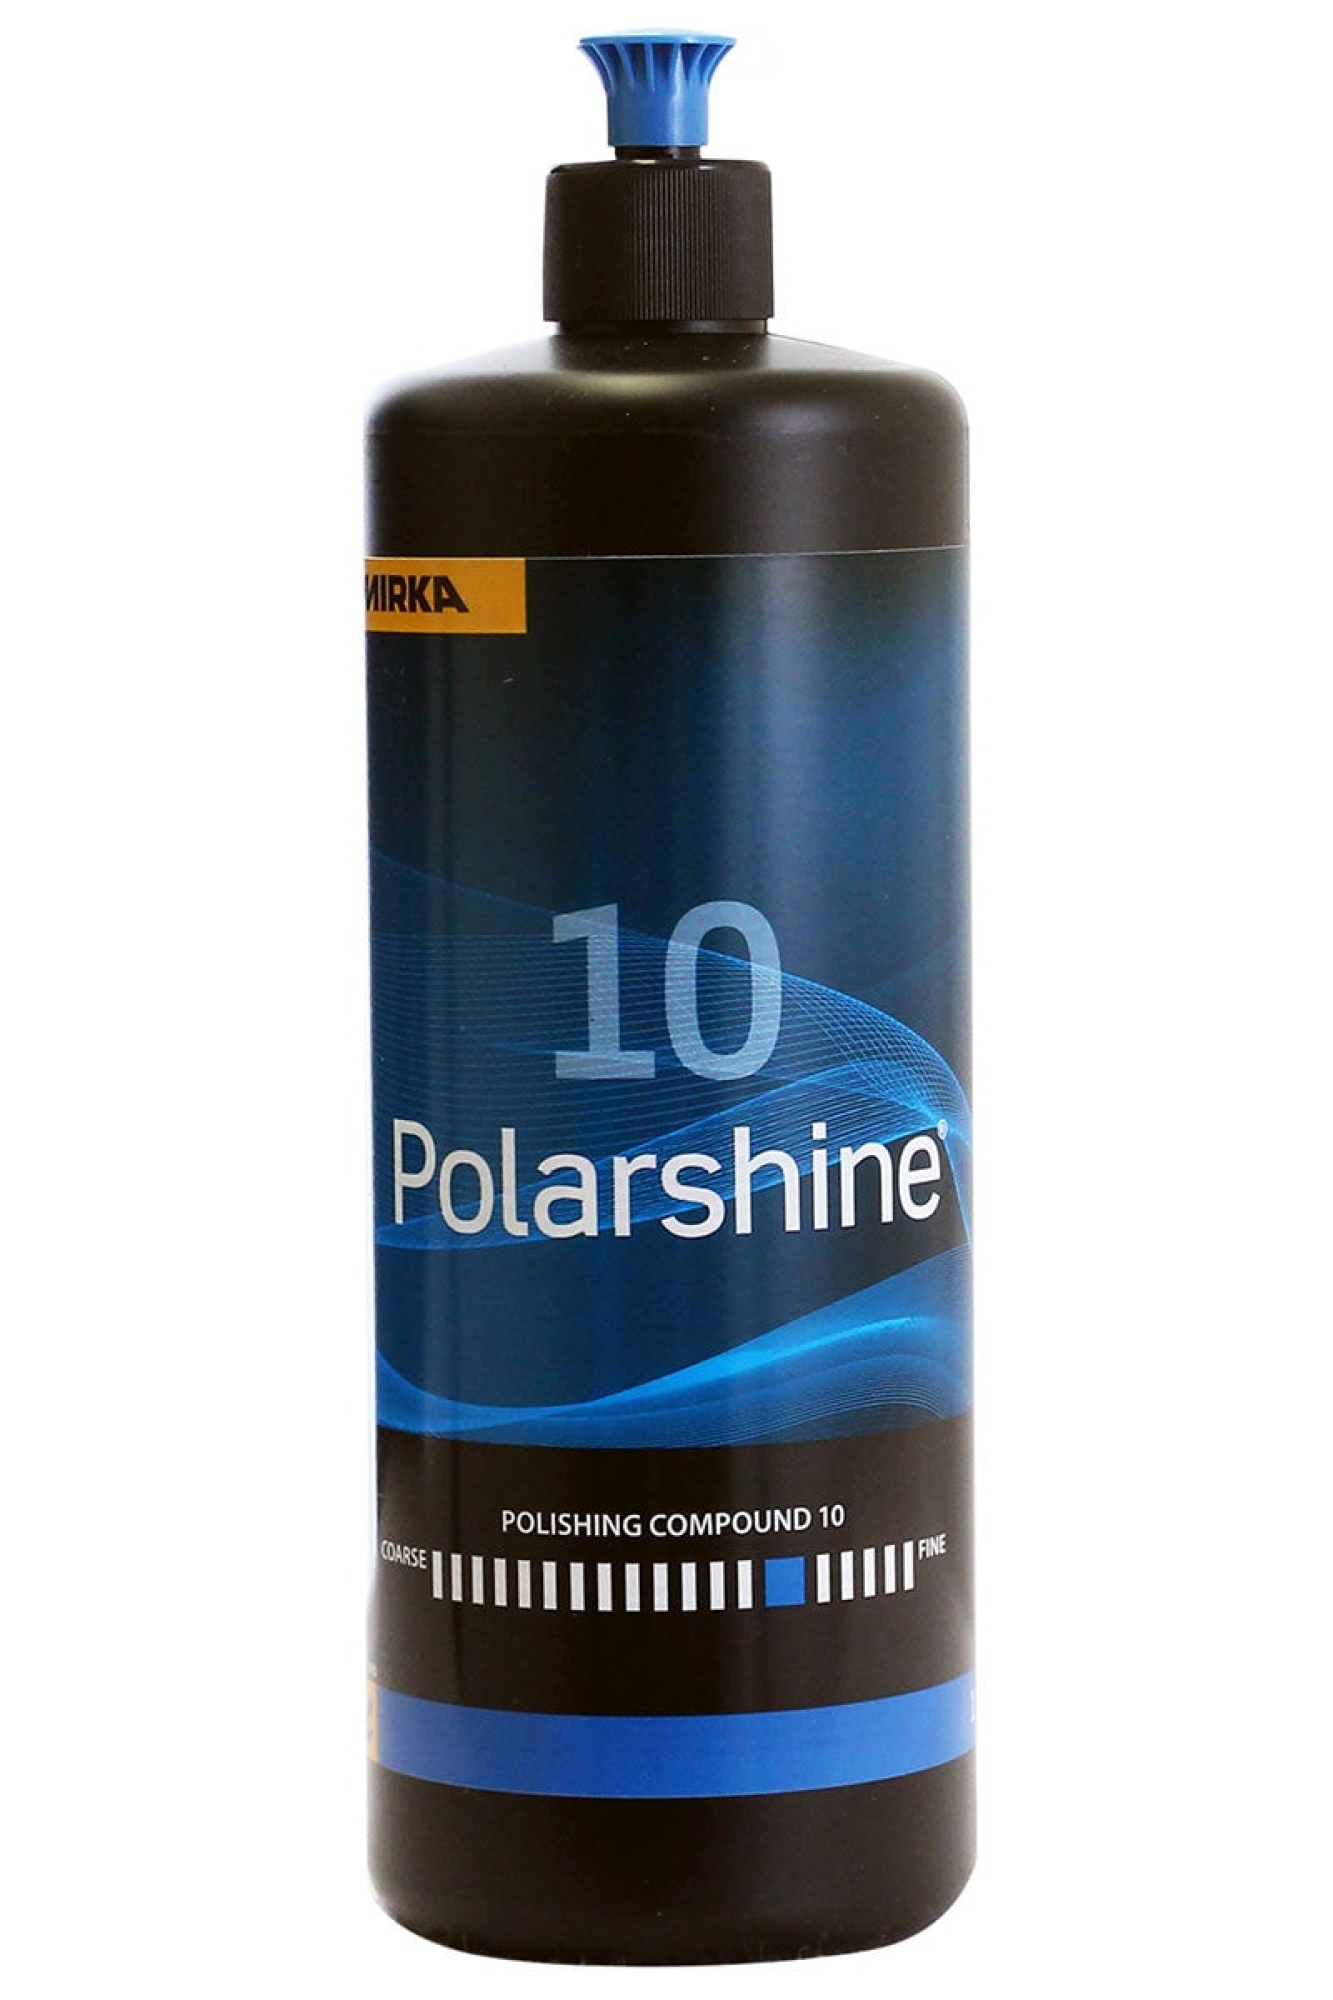 Mirka® Polarshine 10 7995010111, 1 Liter, One-Step Politur für ein schnelles und perfektes Finish